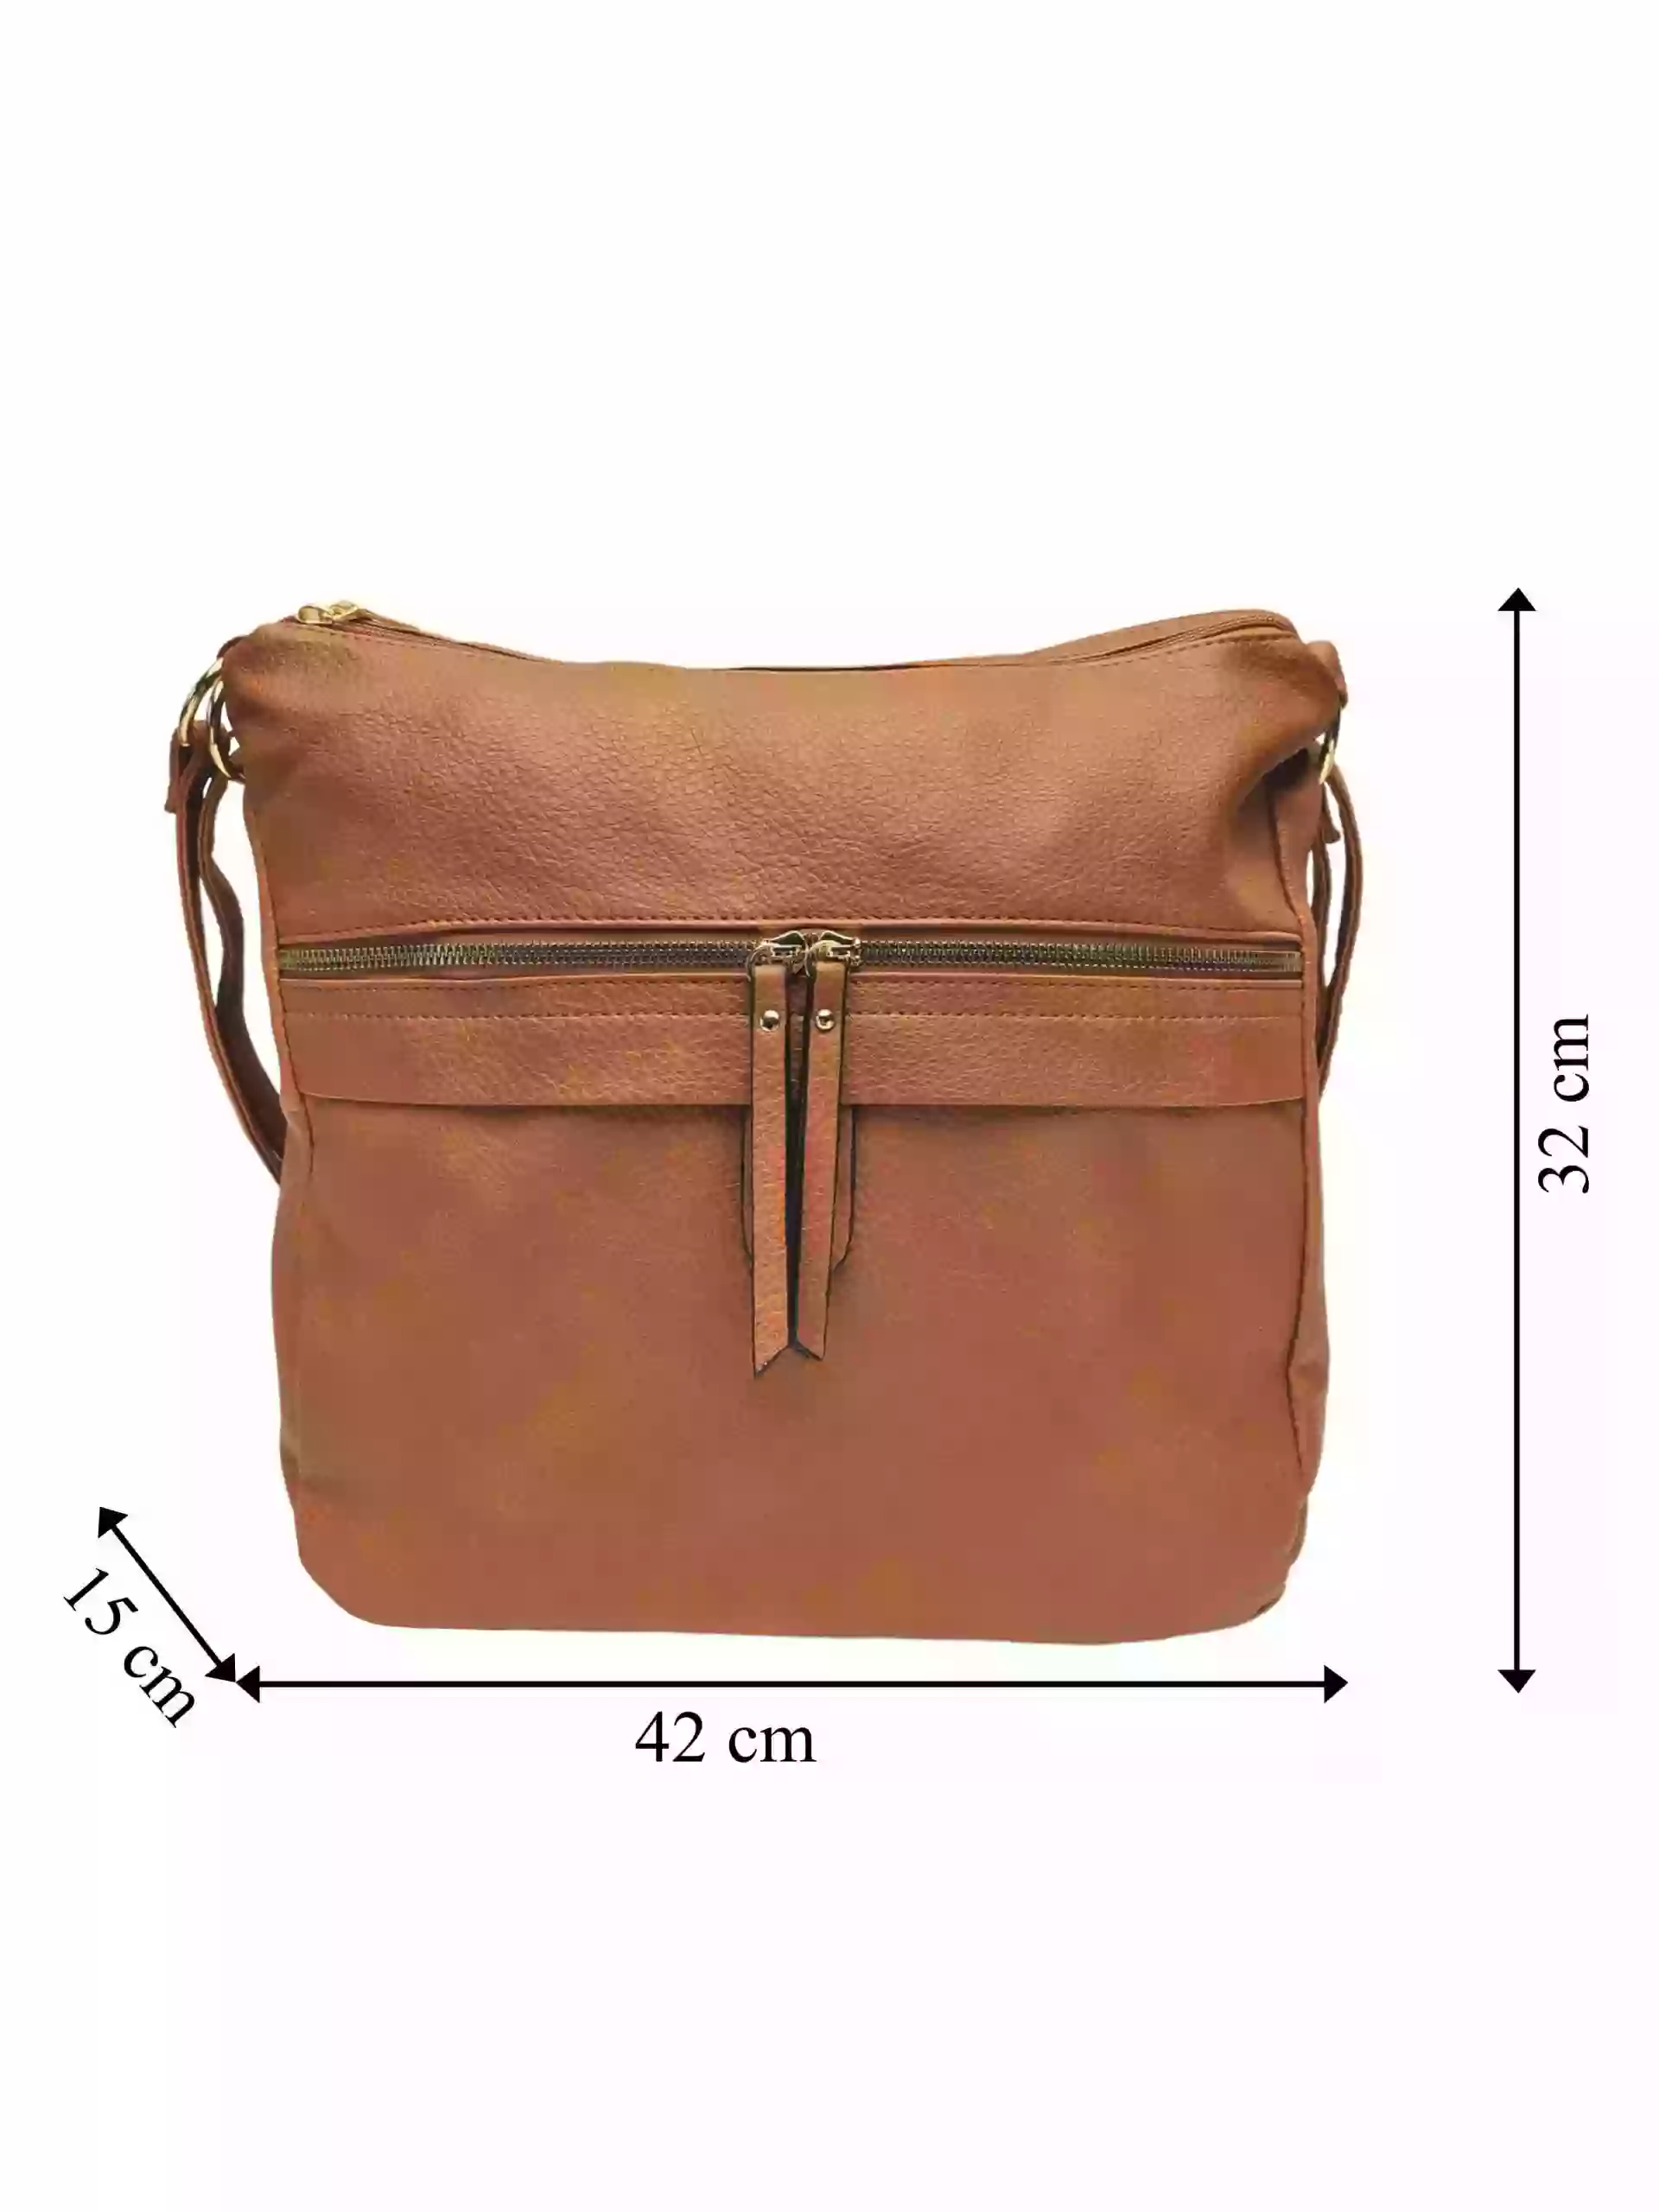 Velký středně hnědý kabelko-batoh 2v1 s kapsou, Int. Company, H23, přední strana kabelko-batohu s rozměry